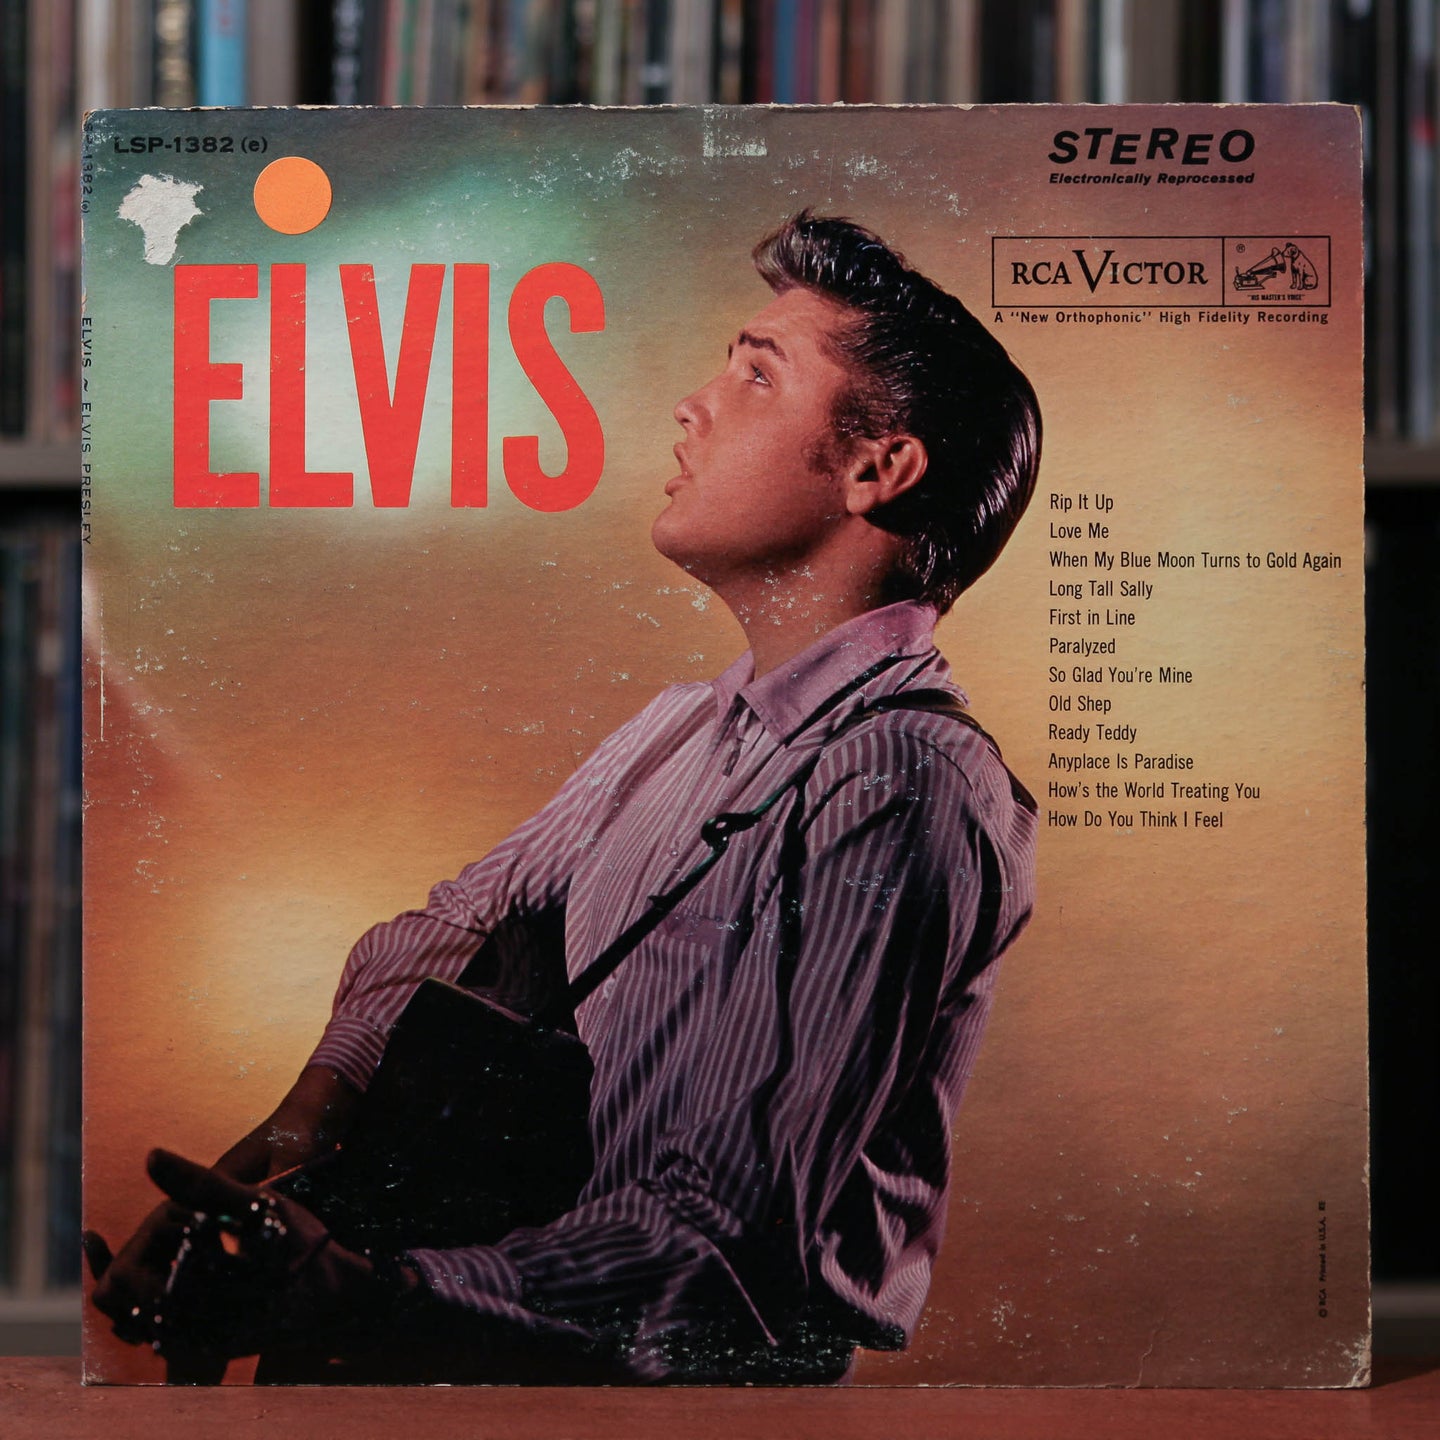 Elvis Presley - Elvis - Stereo - RCA Victor 1956, VG/VG+